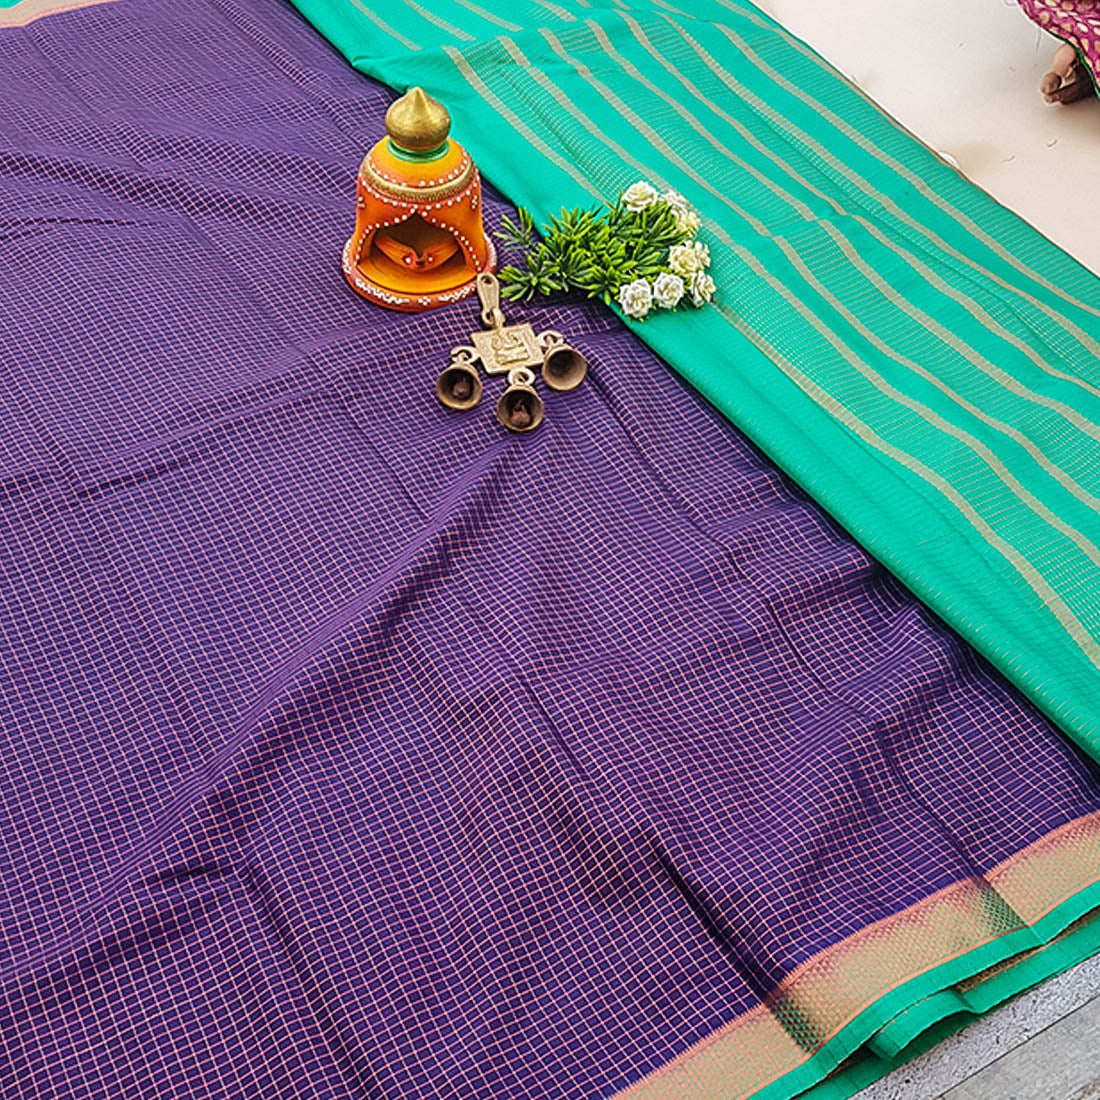 Mysore crepe Semi-silk saree in Purple/Blue Colour 13704N